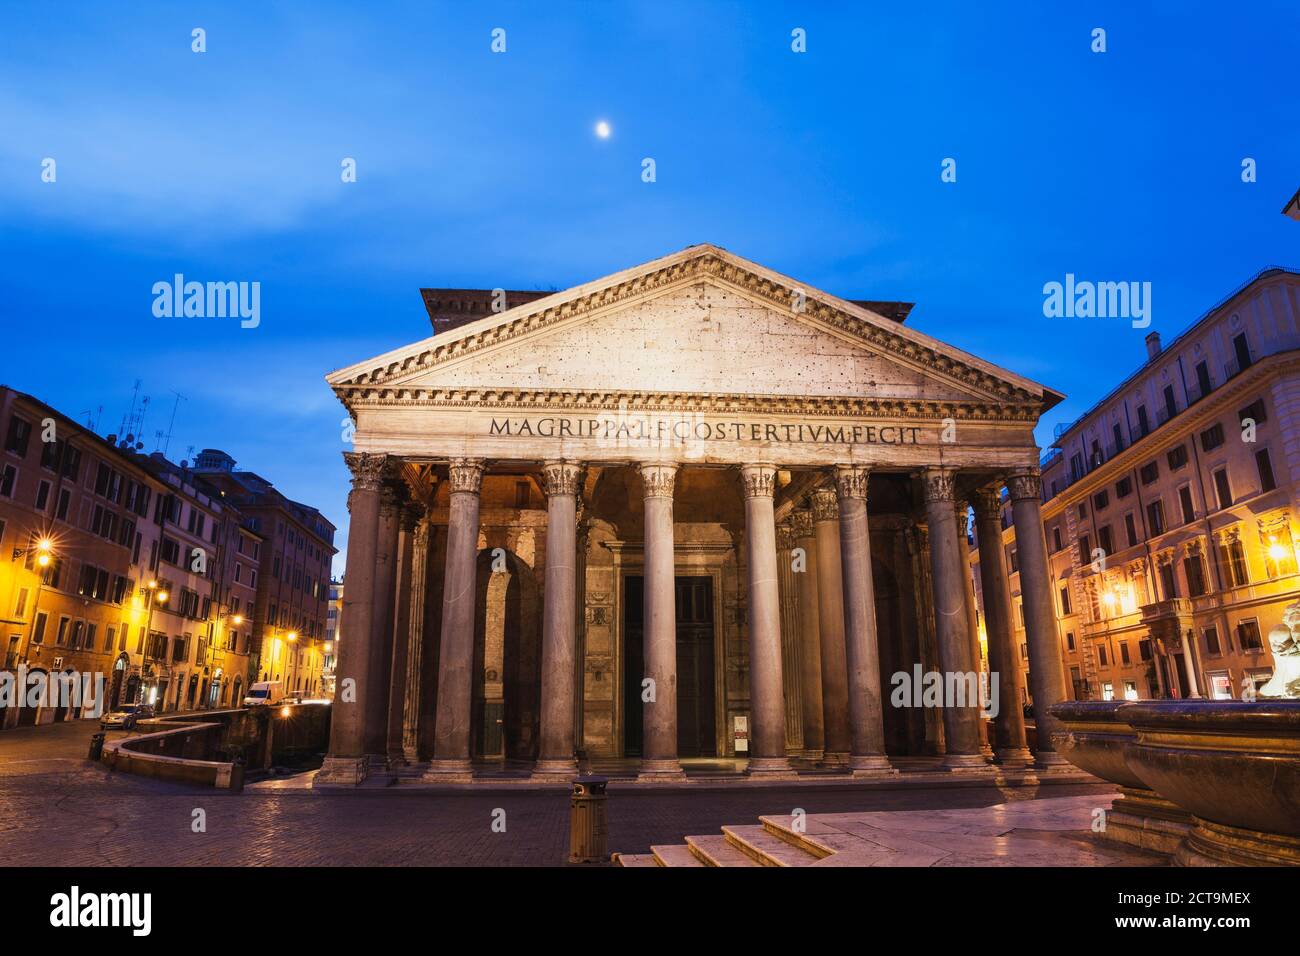 Italy, Lazio, Rome, Pantheon, Piazza della Rotonda in the evening Stock Photo